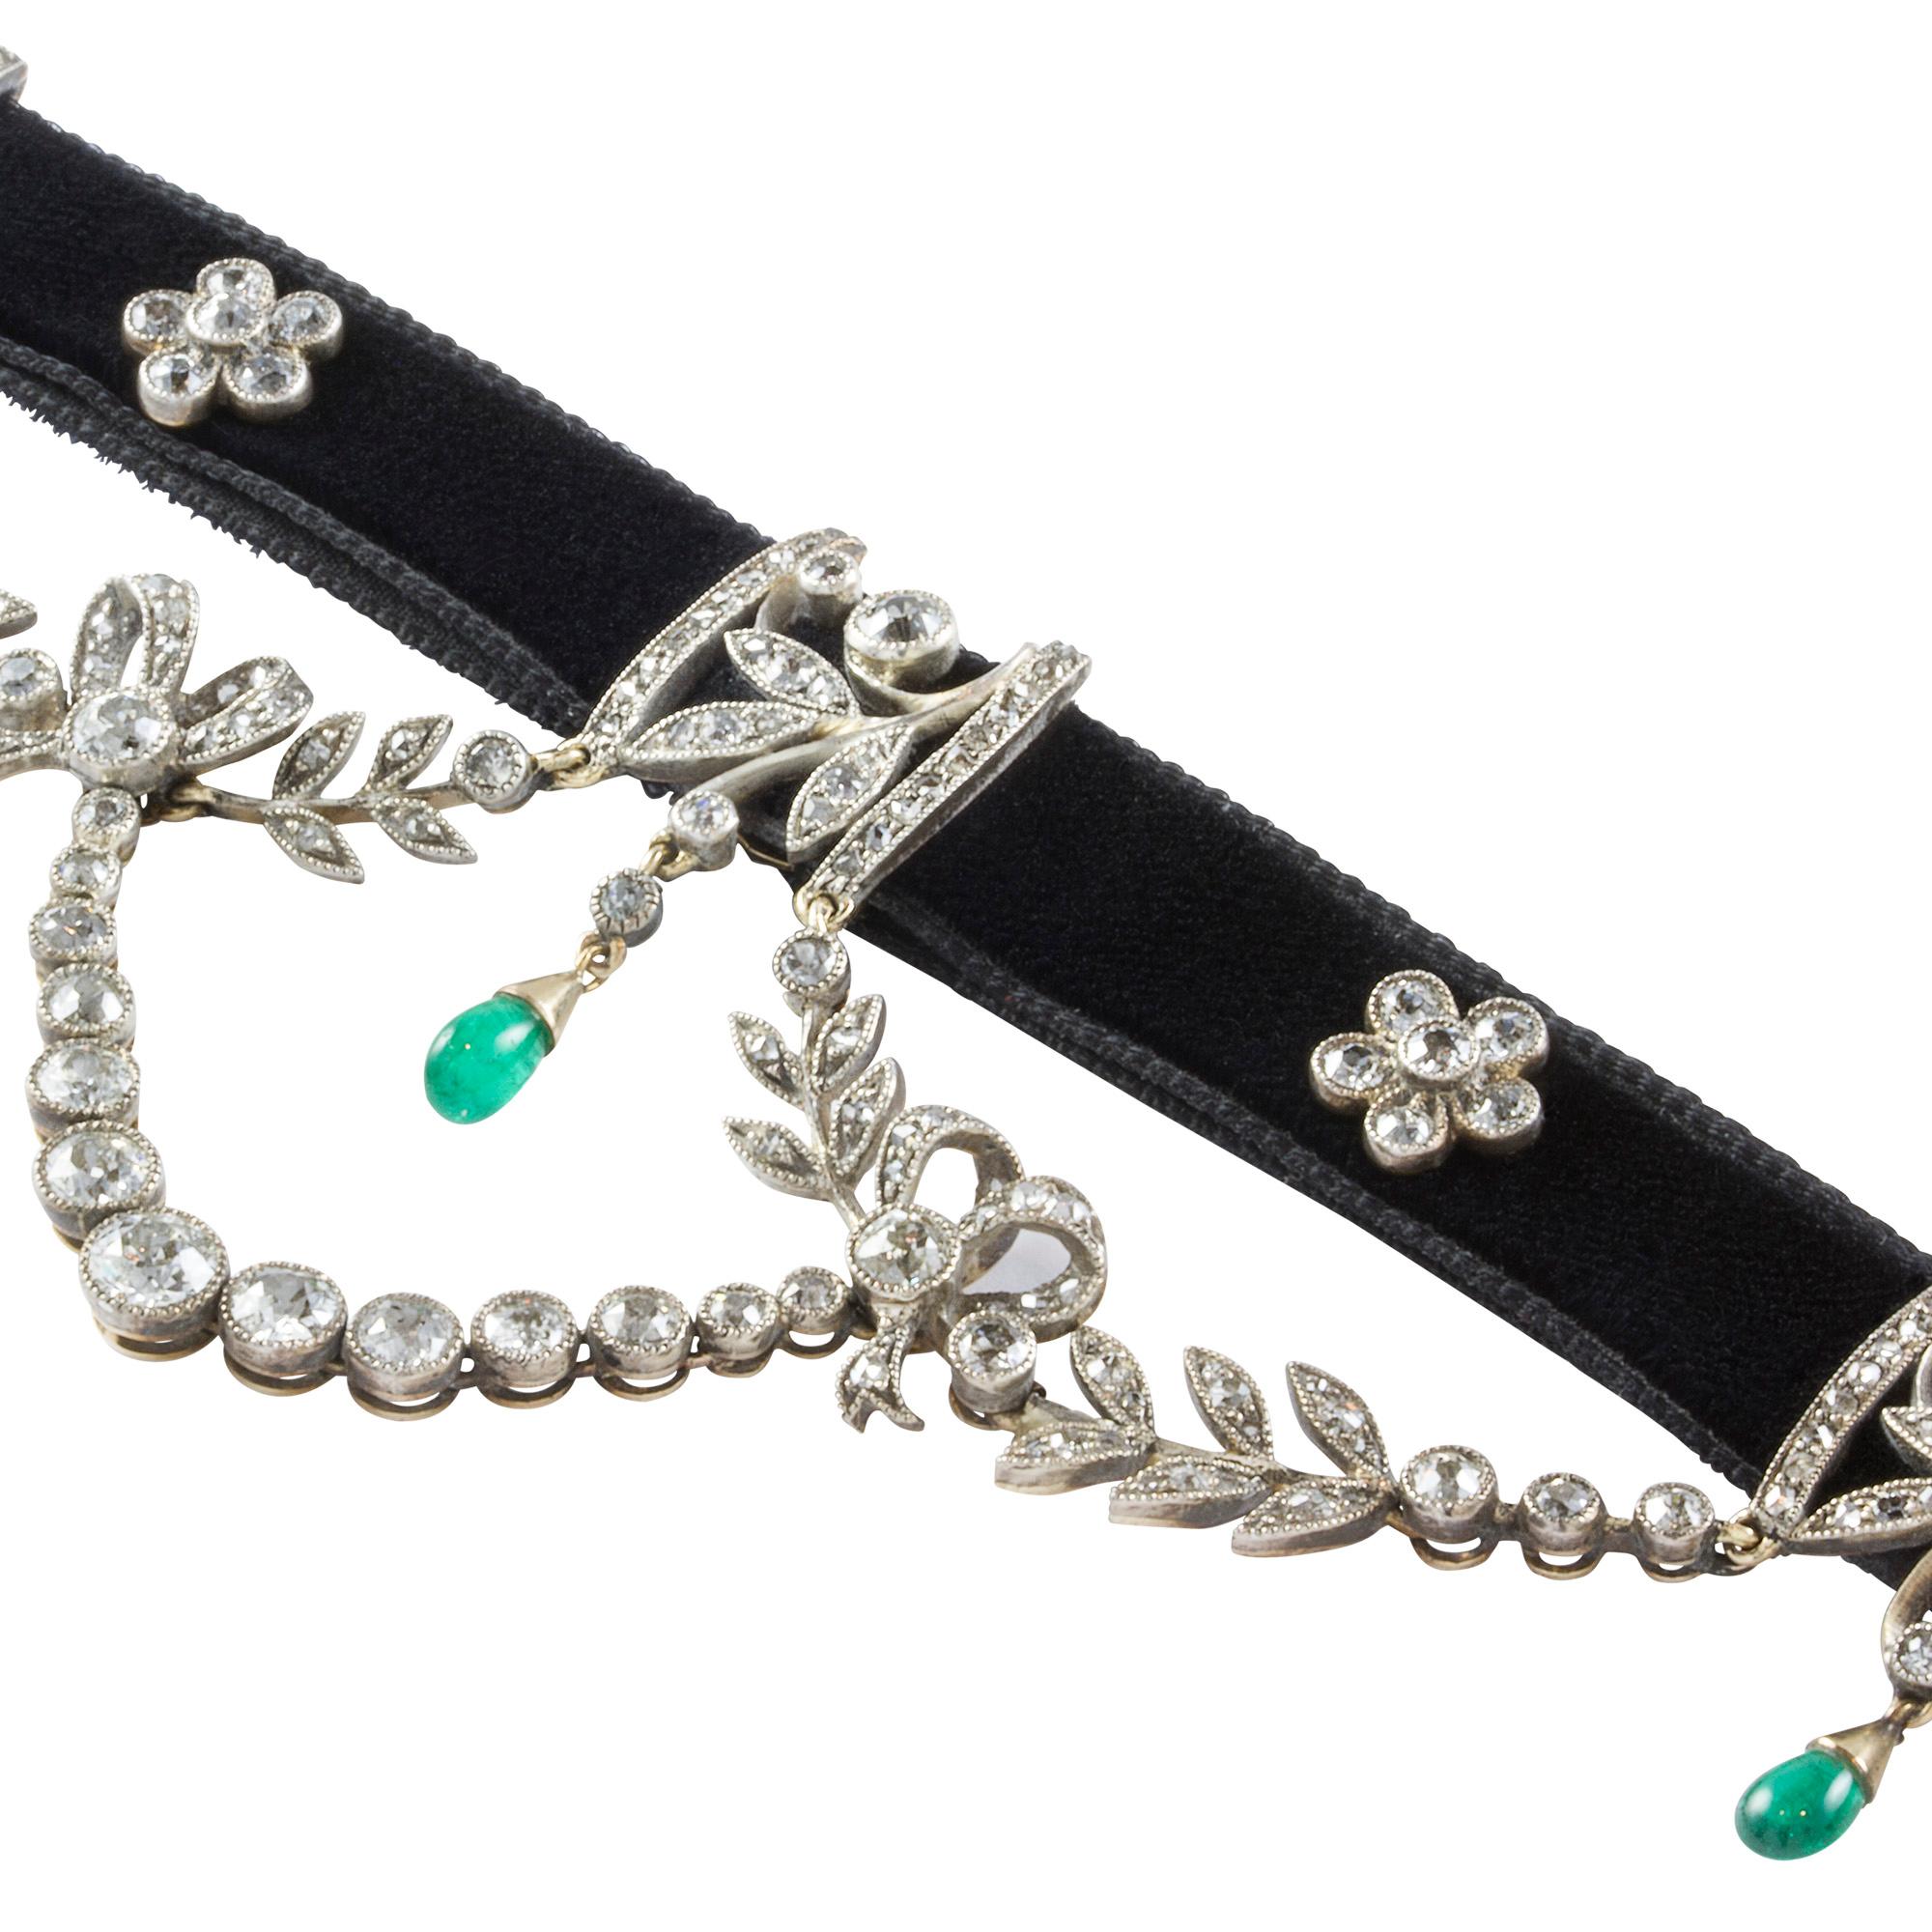 Ein Edwardian Diamant und Smaragd Festoon Swag Halskette, das Halsband Halskette mit zwei alten Brillant Diamanten floralen Clustern und drei Rose verziert und alten Brillant Diamanten gesetzt foliate Design Bars suspendiert eine birnenförmige